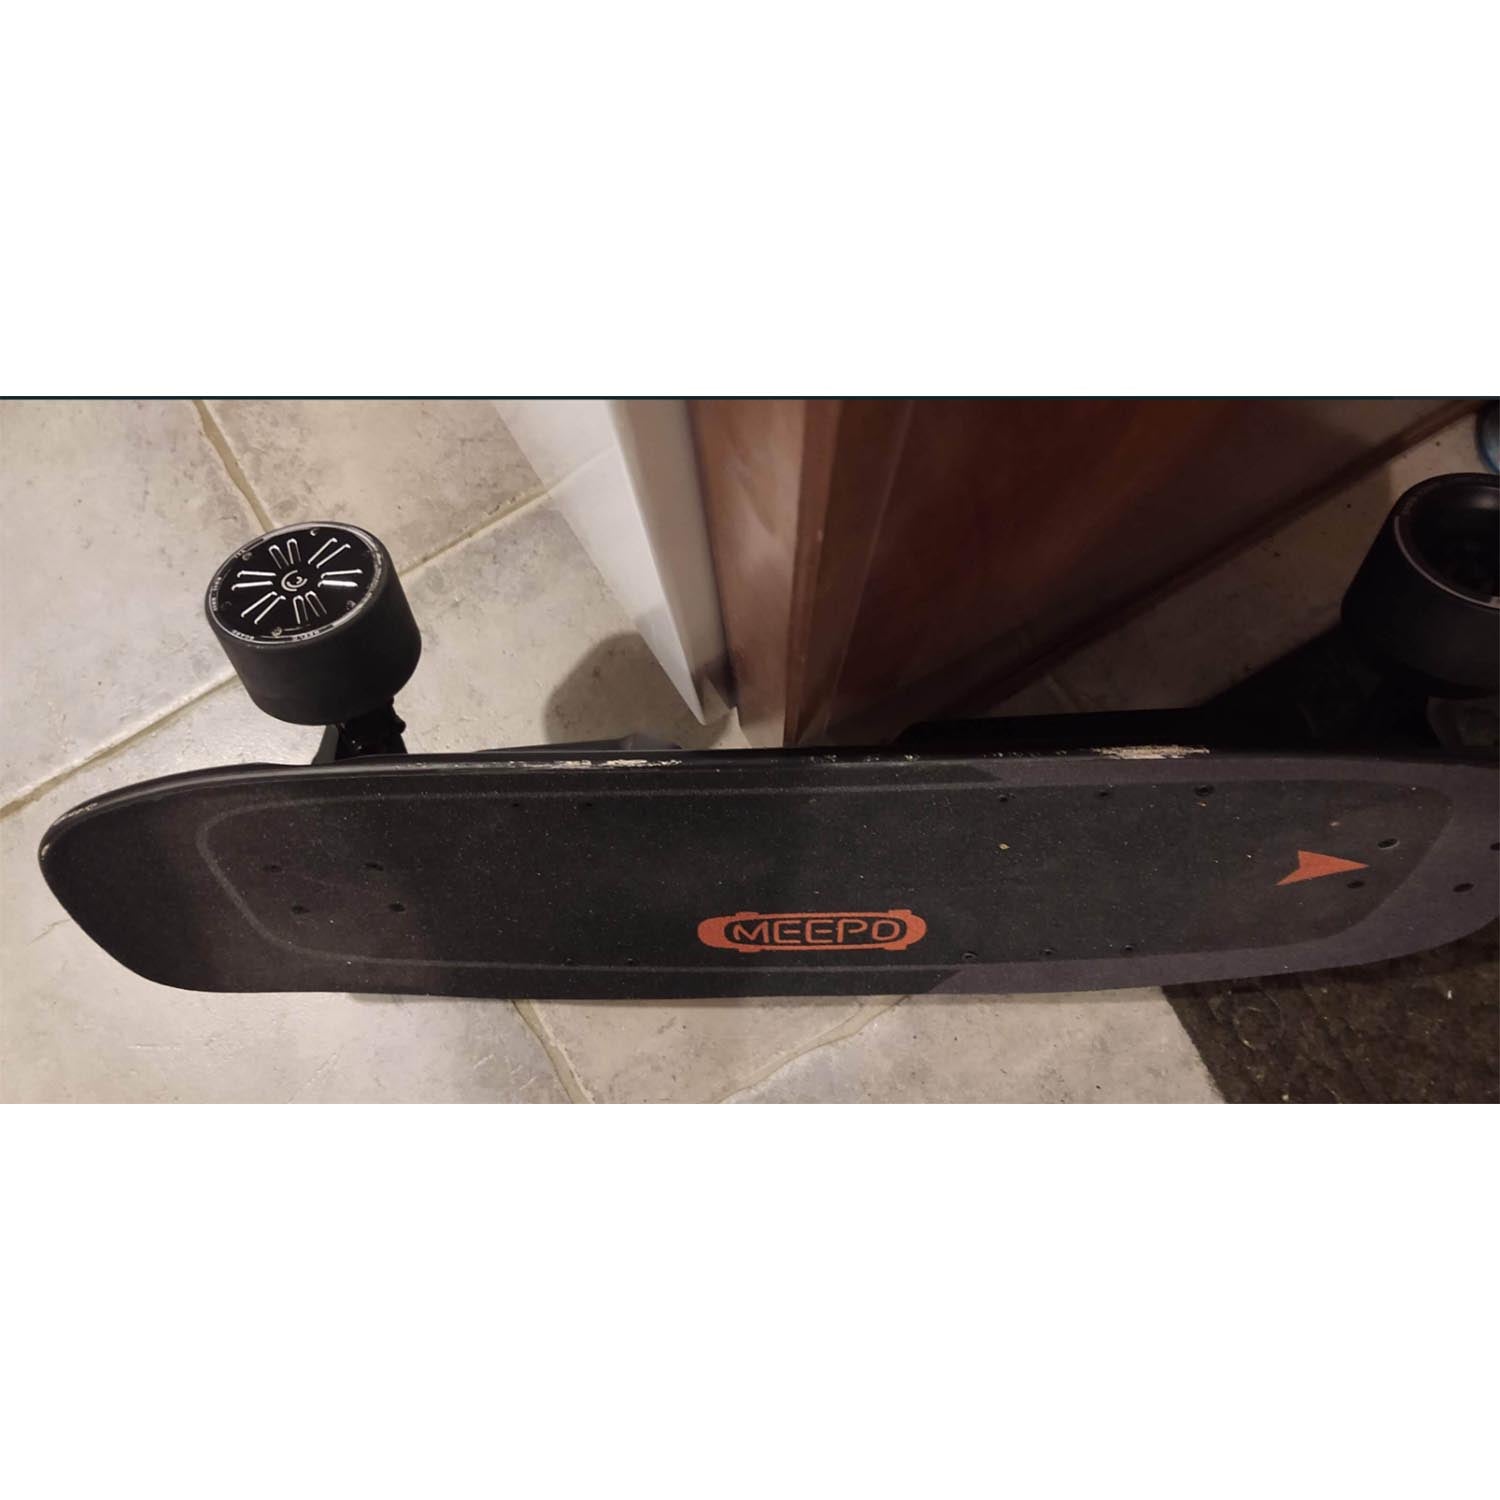 Refurbished Skateboard (U.S. Only)